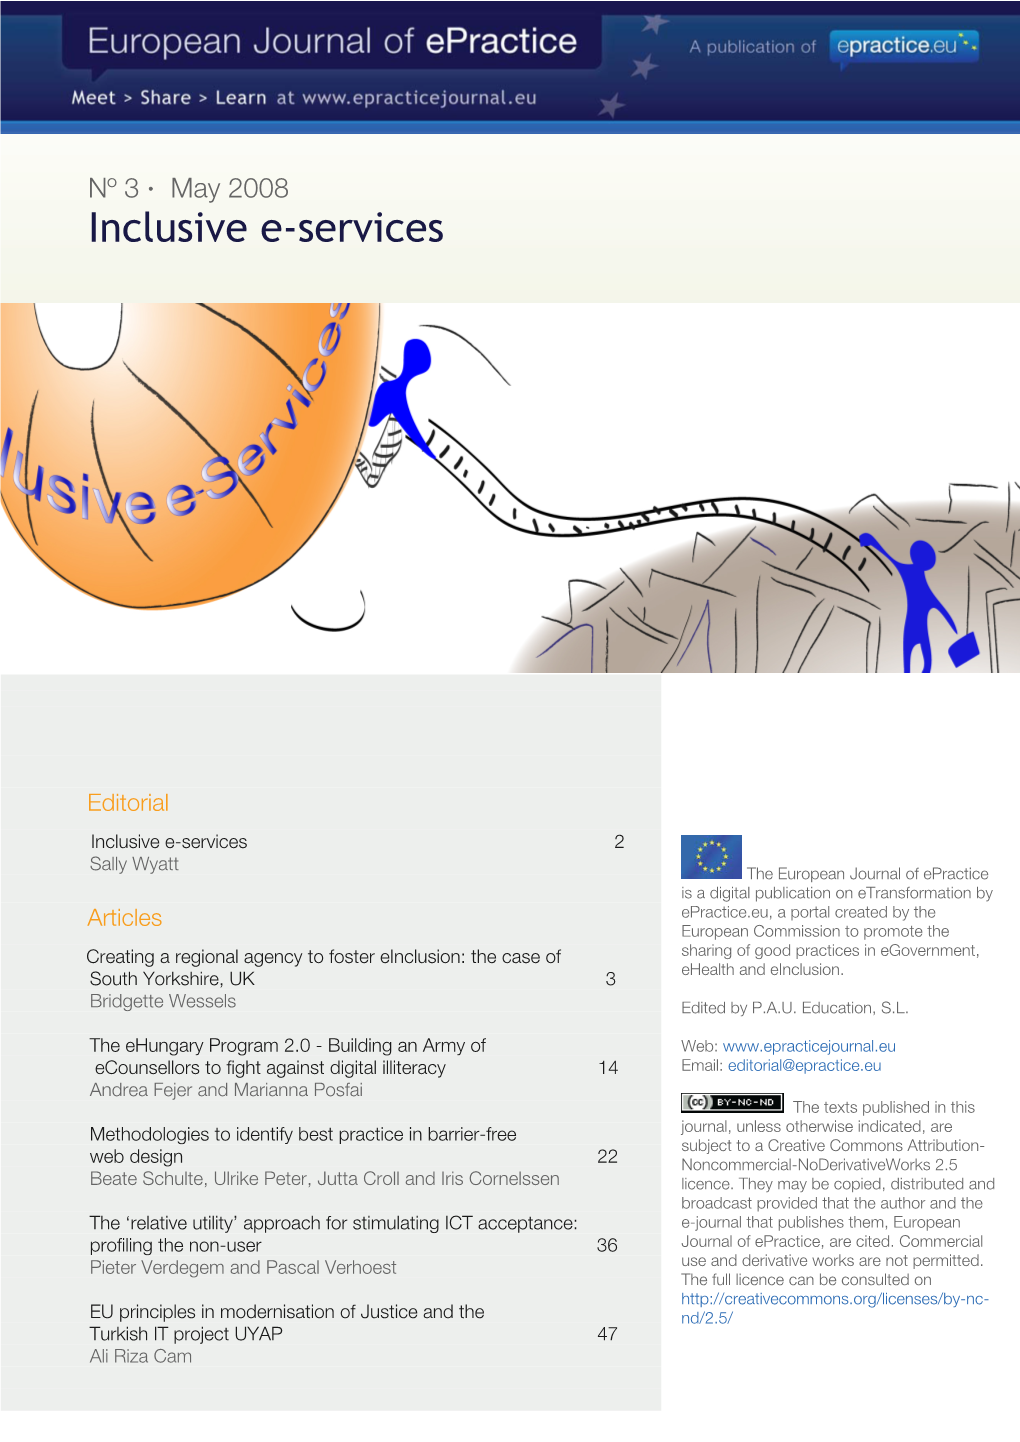 Inclusive E-Services